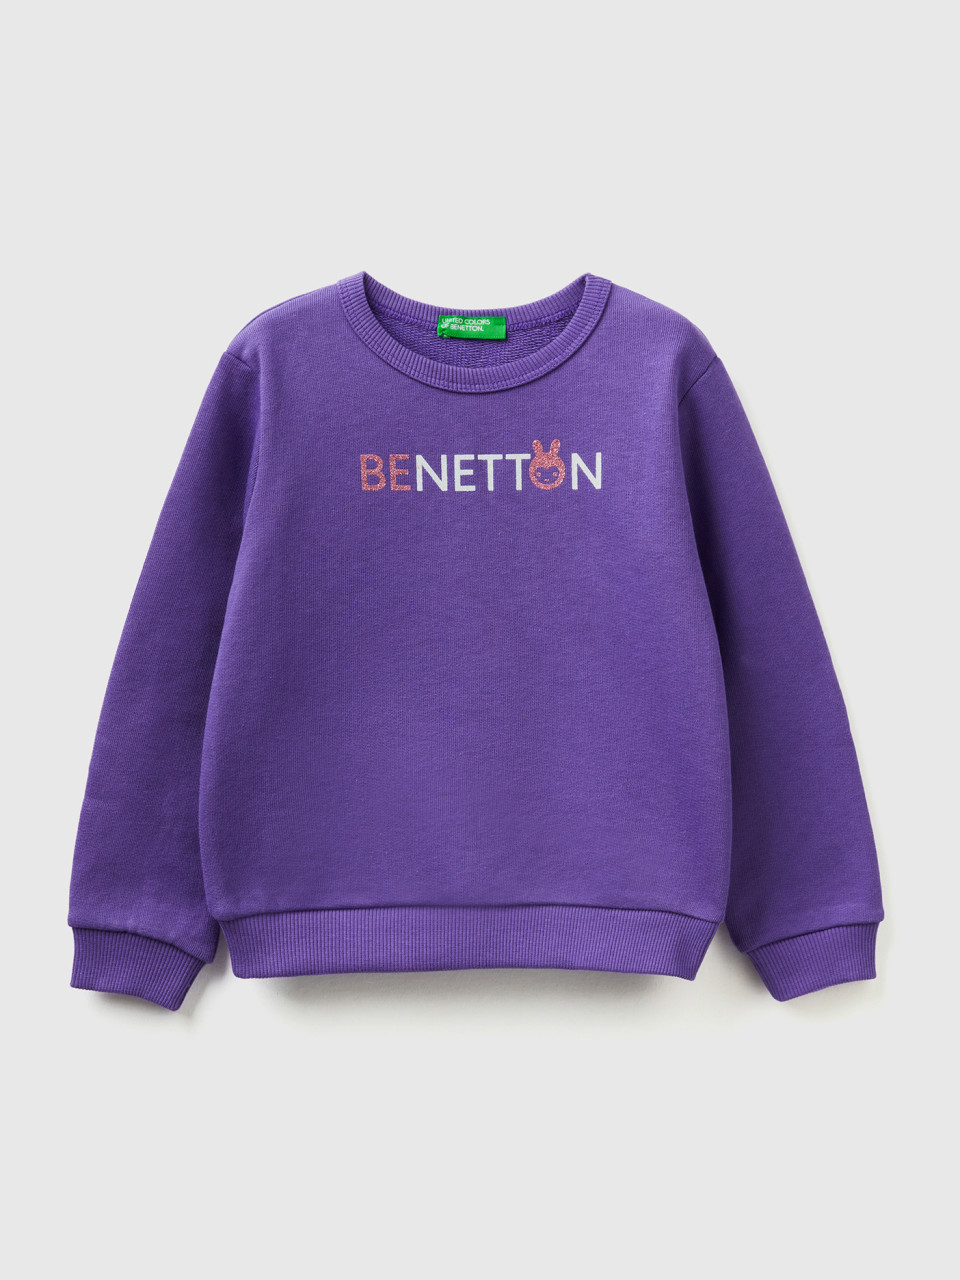 Benetton, Viola Sweater Aus Bio-baumwolle Mit Glitter-print, Purpur, female